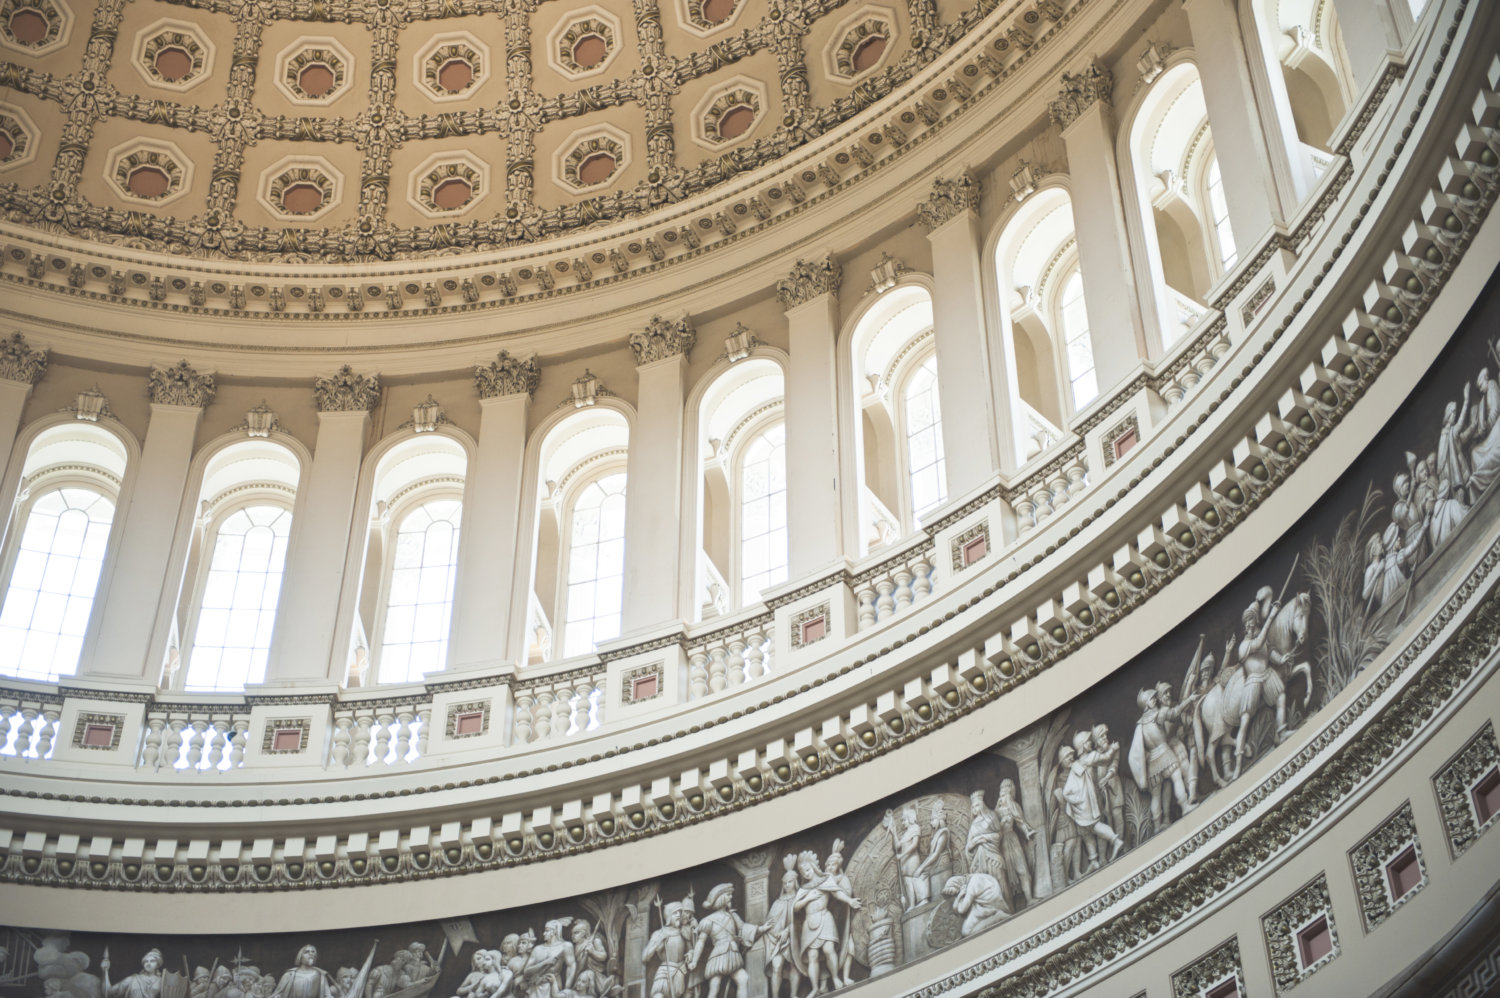 The U.S. Capitol dome interior